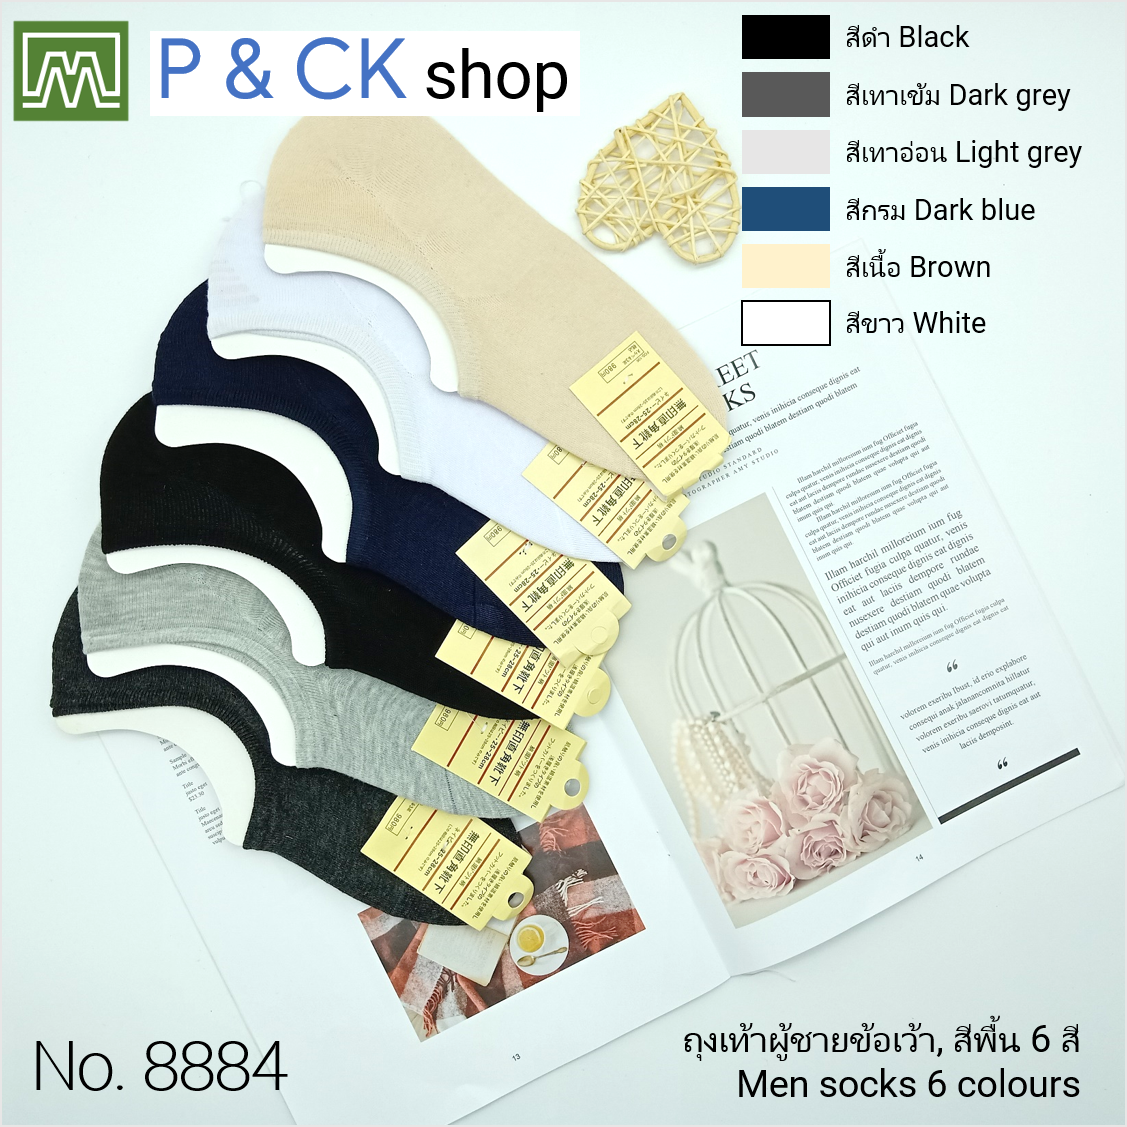 P & CK / ถุงเท้าผู้ชายข้อเว้าฟรีไซส์ #8884 [ขายเป็นคู่]: สีพื้น, เลือกได้ 6 สี, กรุณาเลือกให้ดี [เลือกสีโปรดกด 